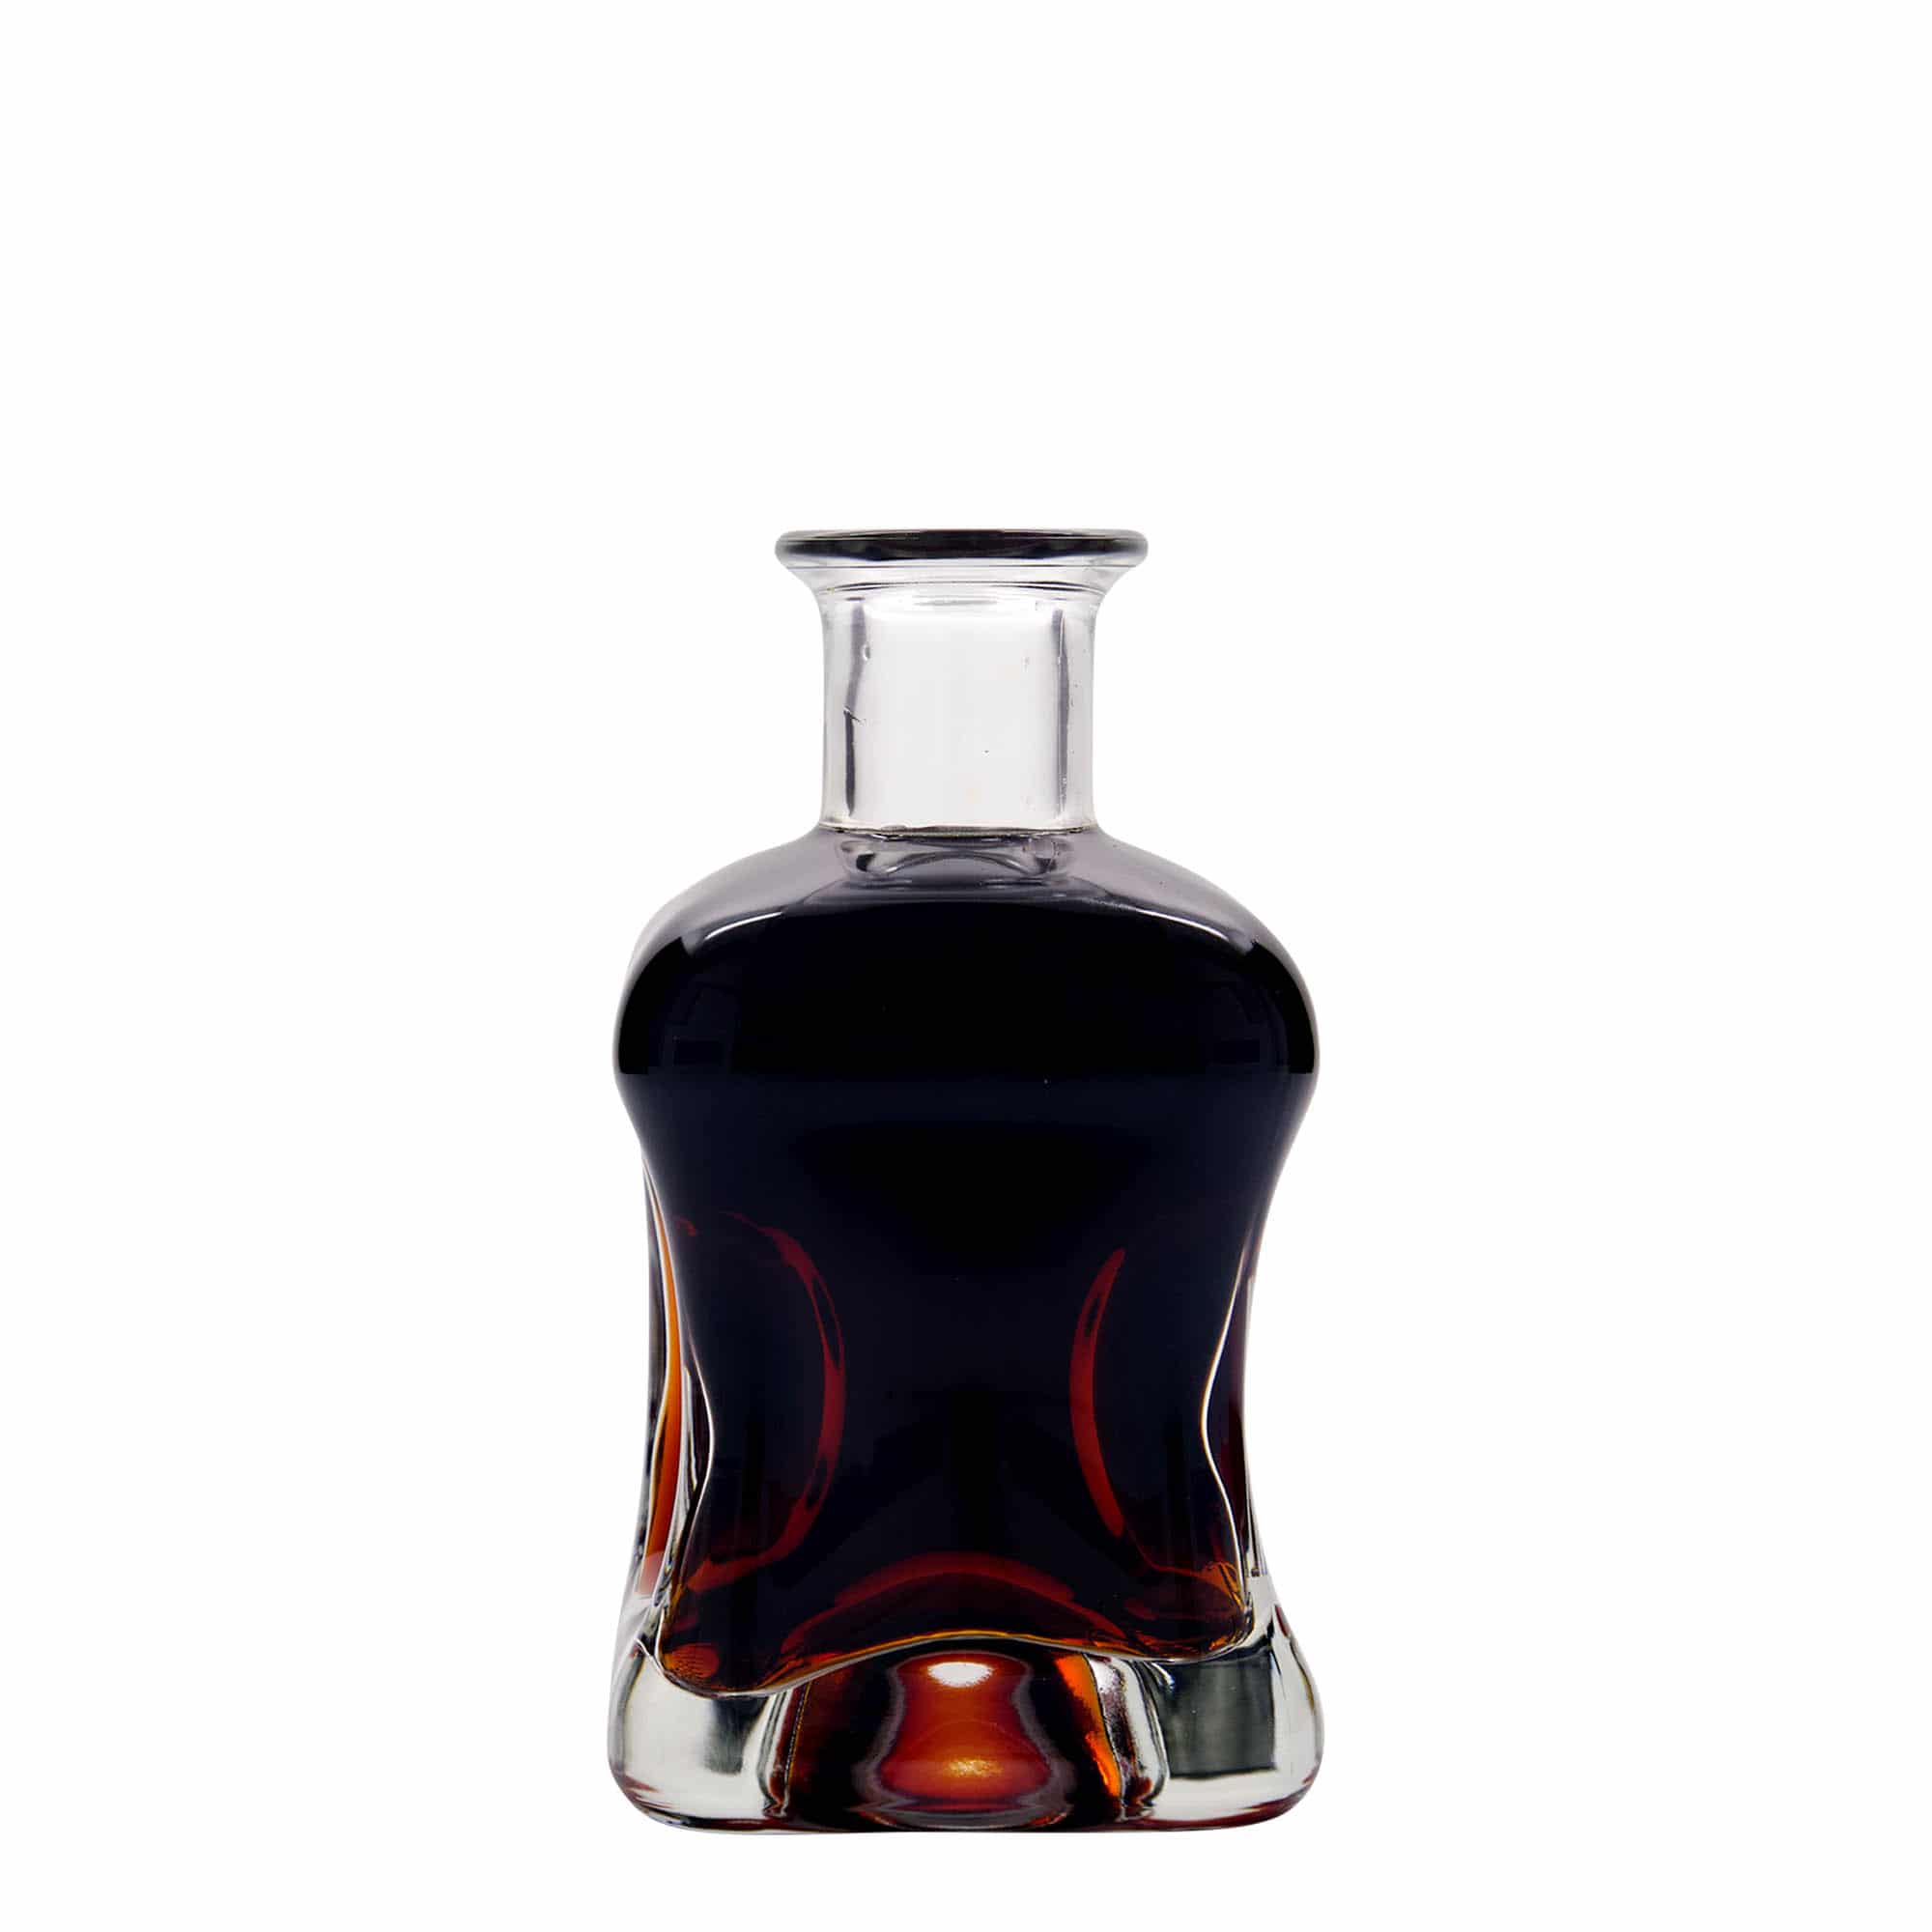 350 ml glasflaske 'Dublin', kvadratisk, åbning: Kork